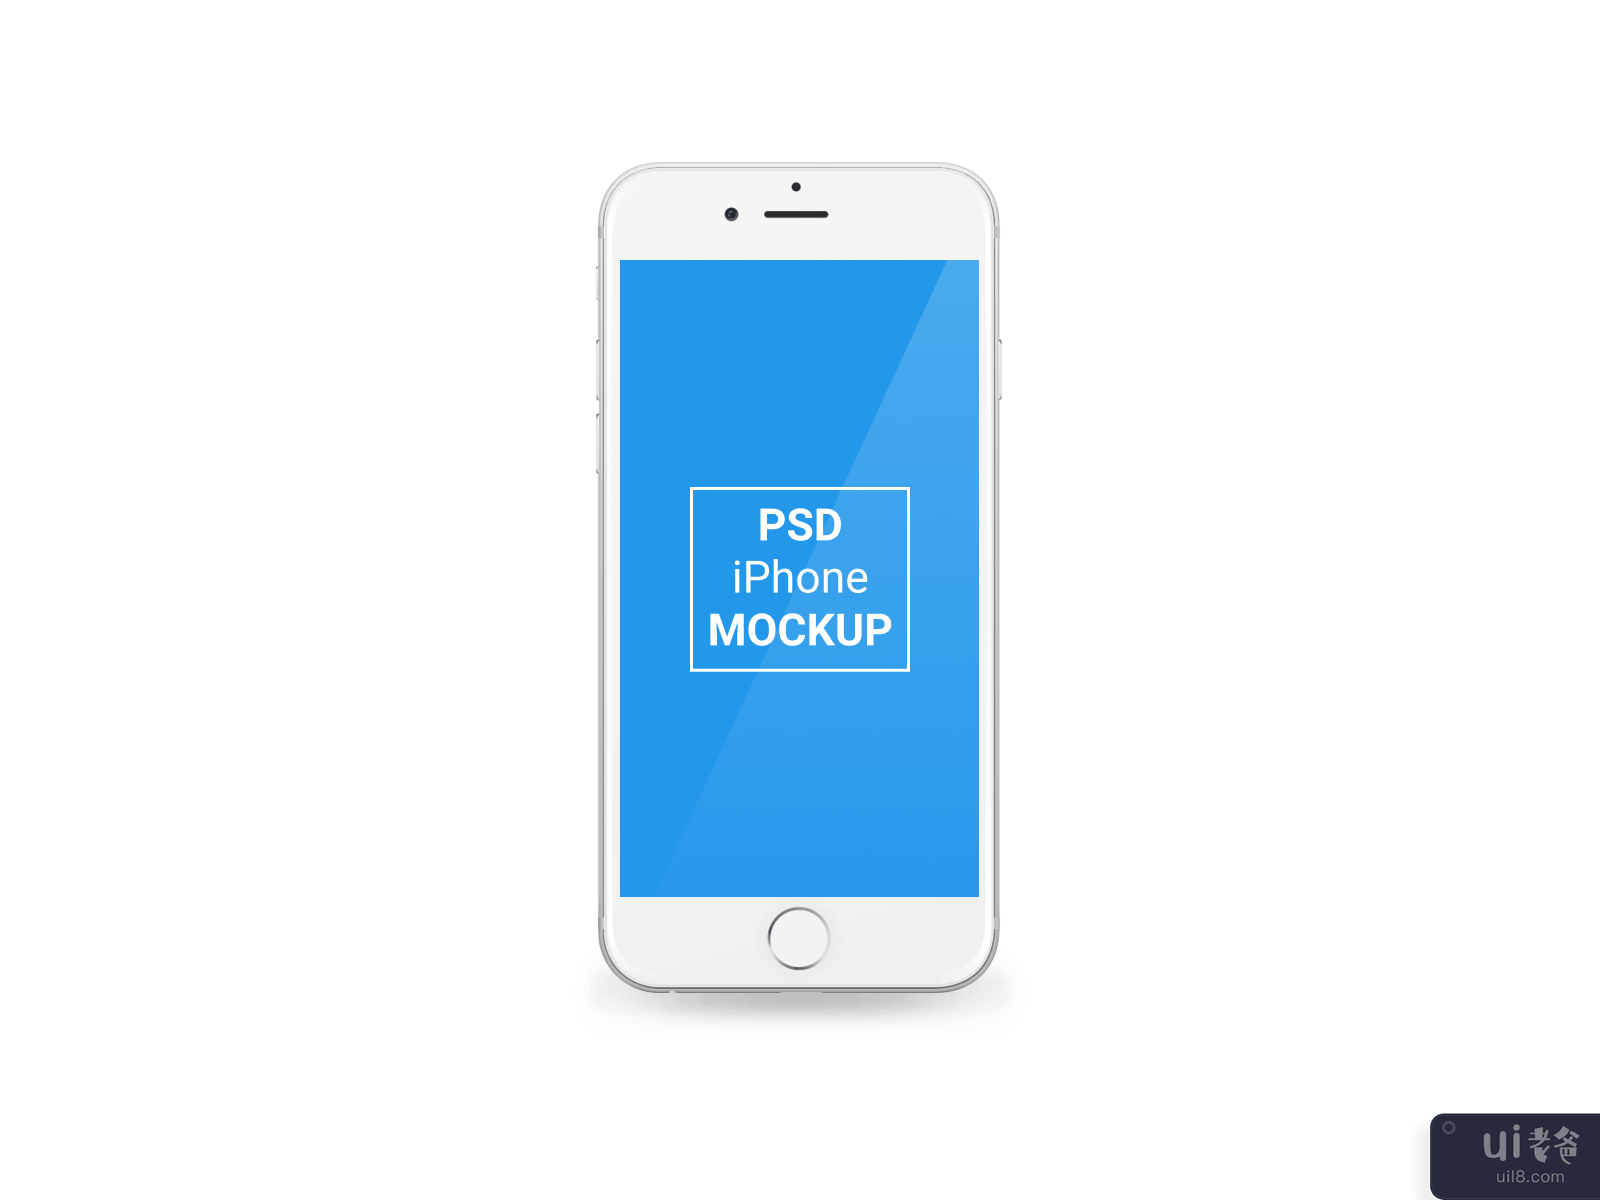 苹果 iPhone 7 Plus PSD 模型(Apple iPhone 7 Plus PSD Mockup)插图2